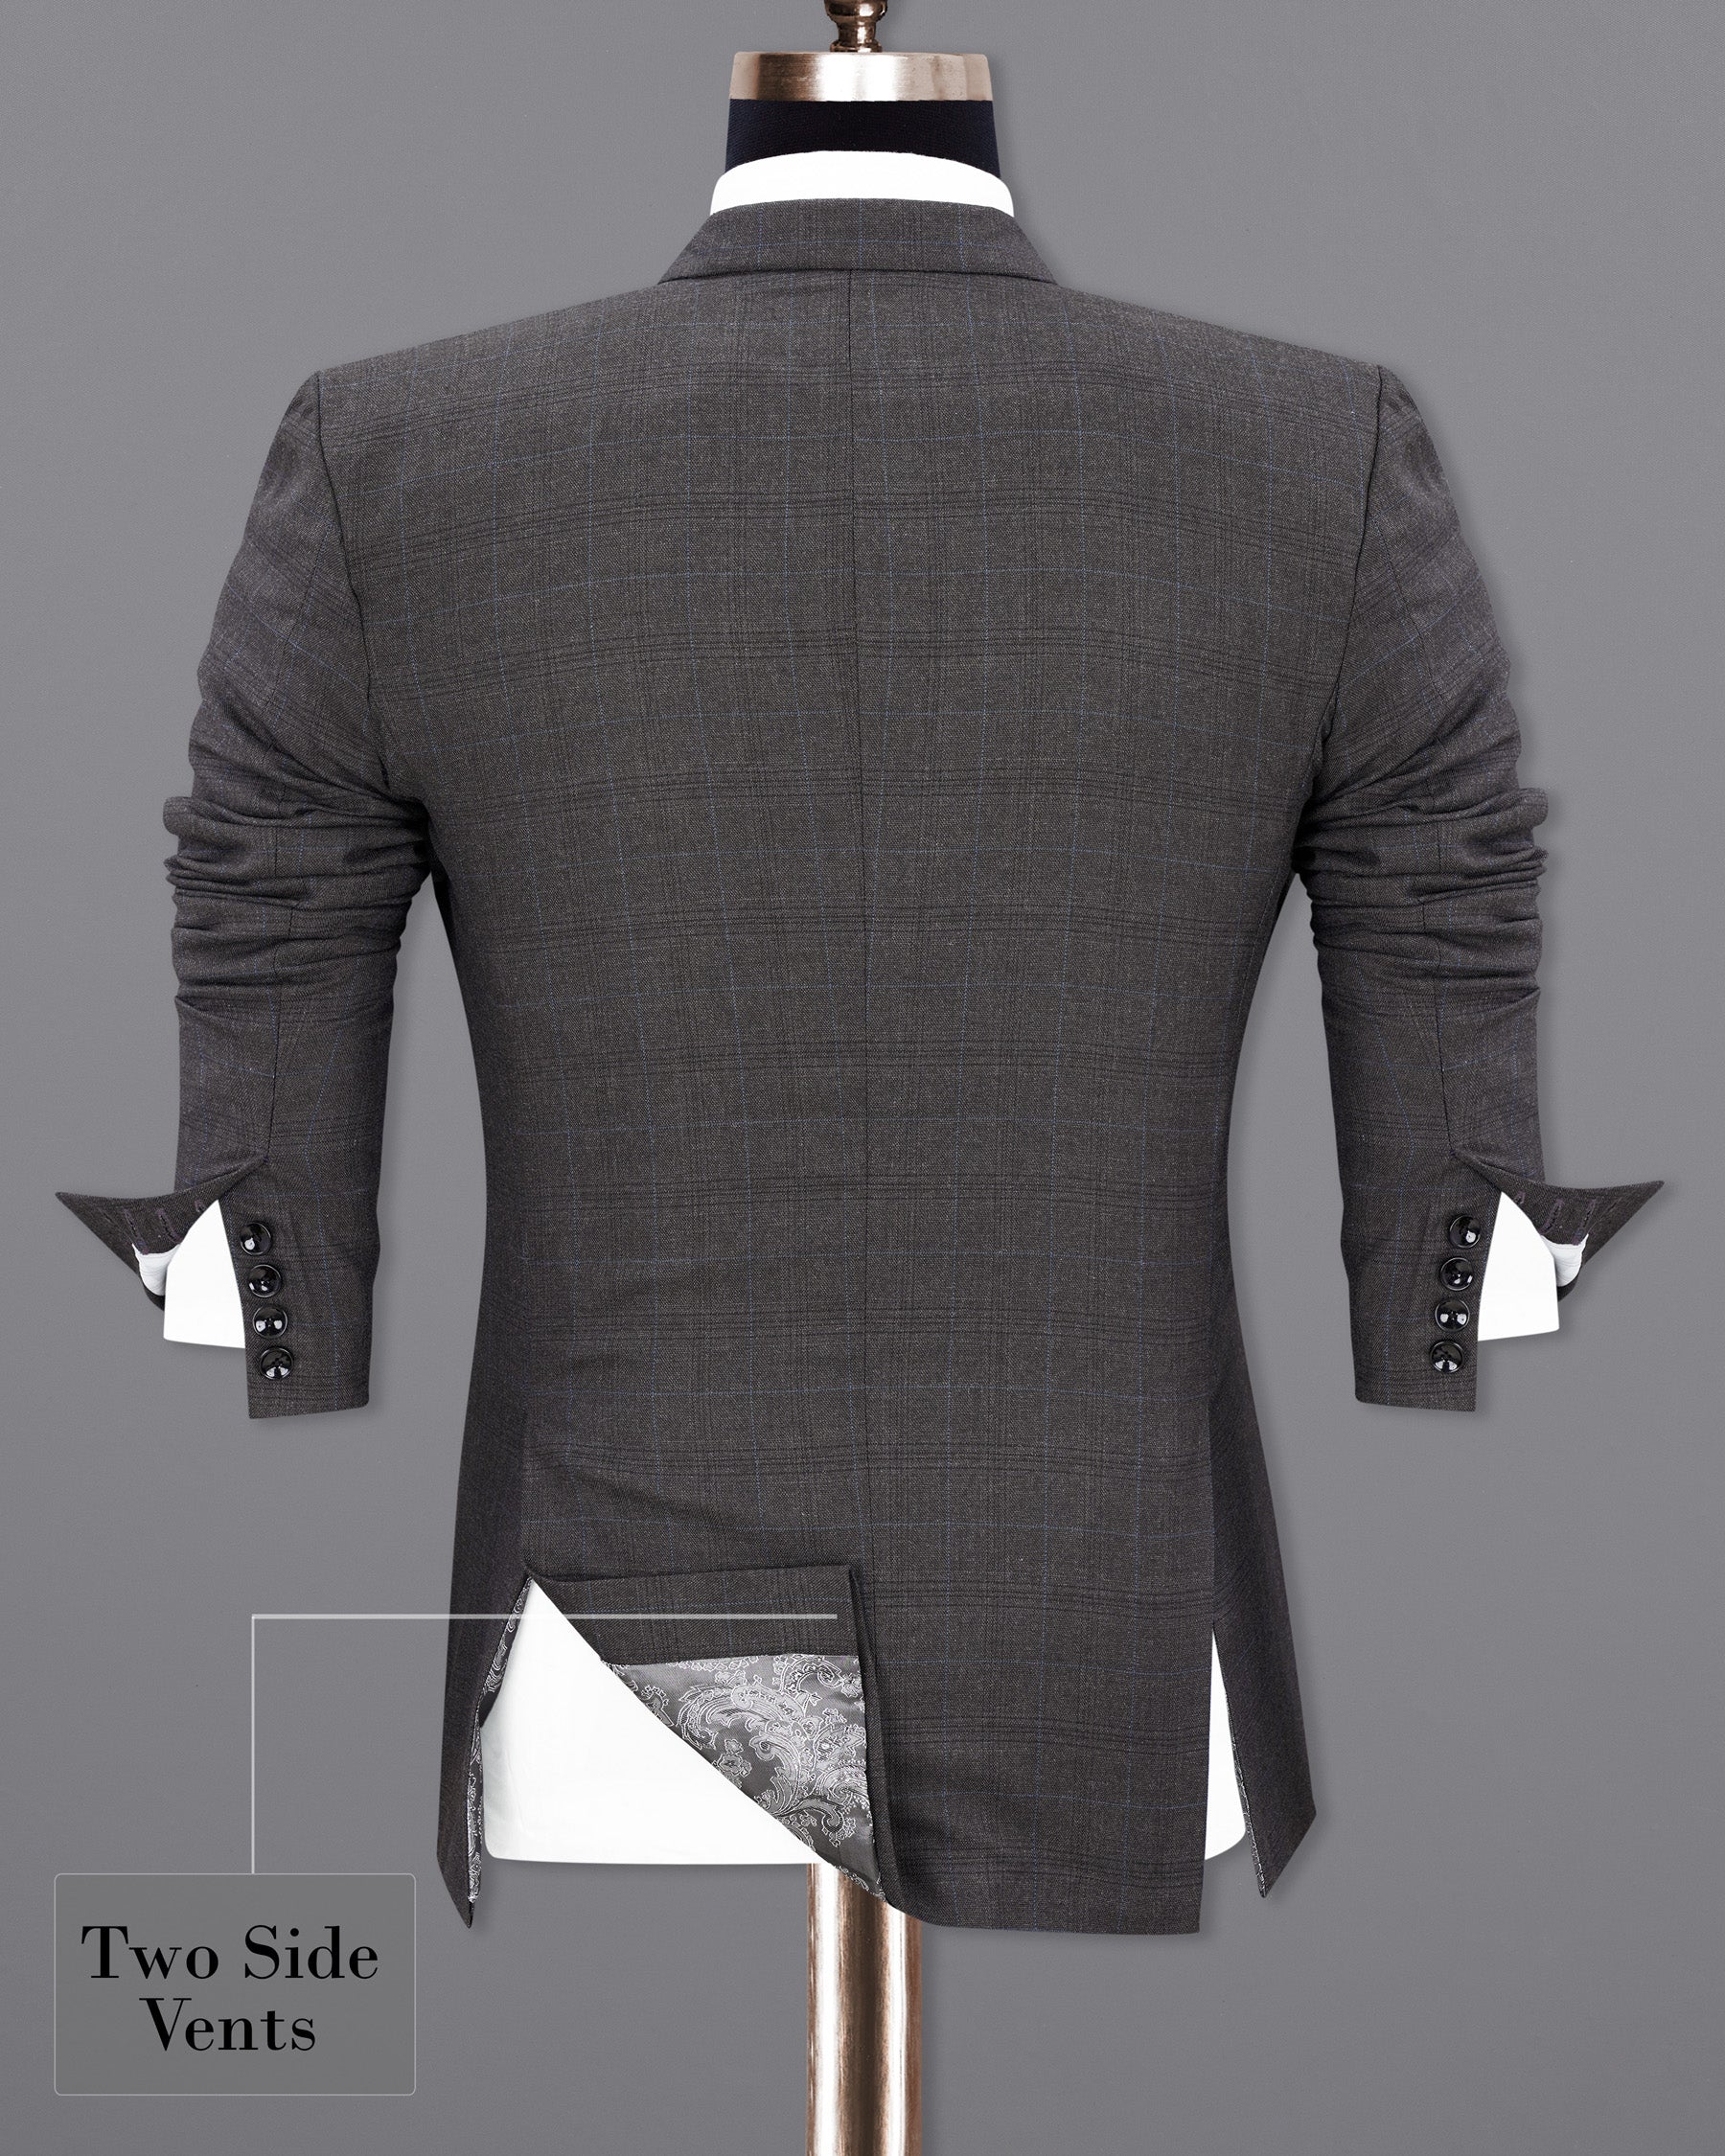 lridium with metallic Subtle Plaid Suit